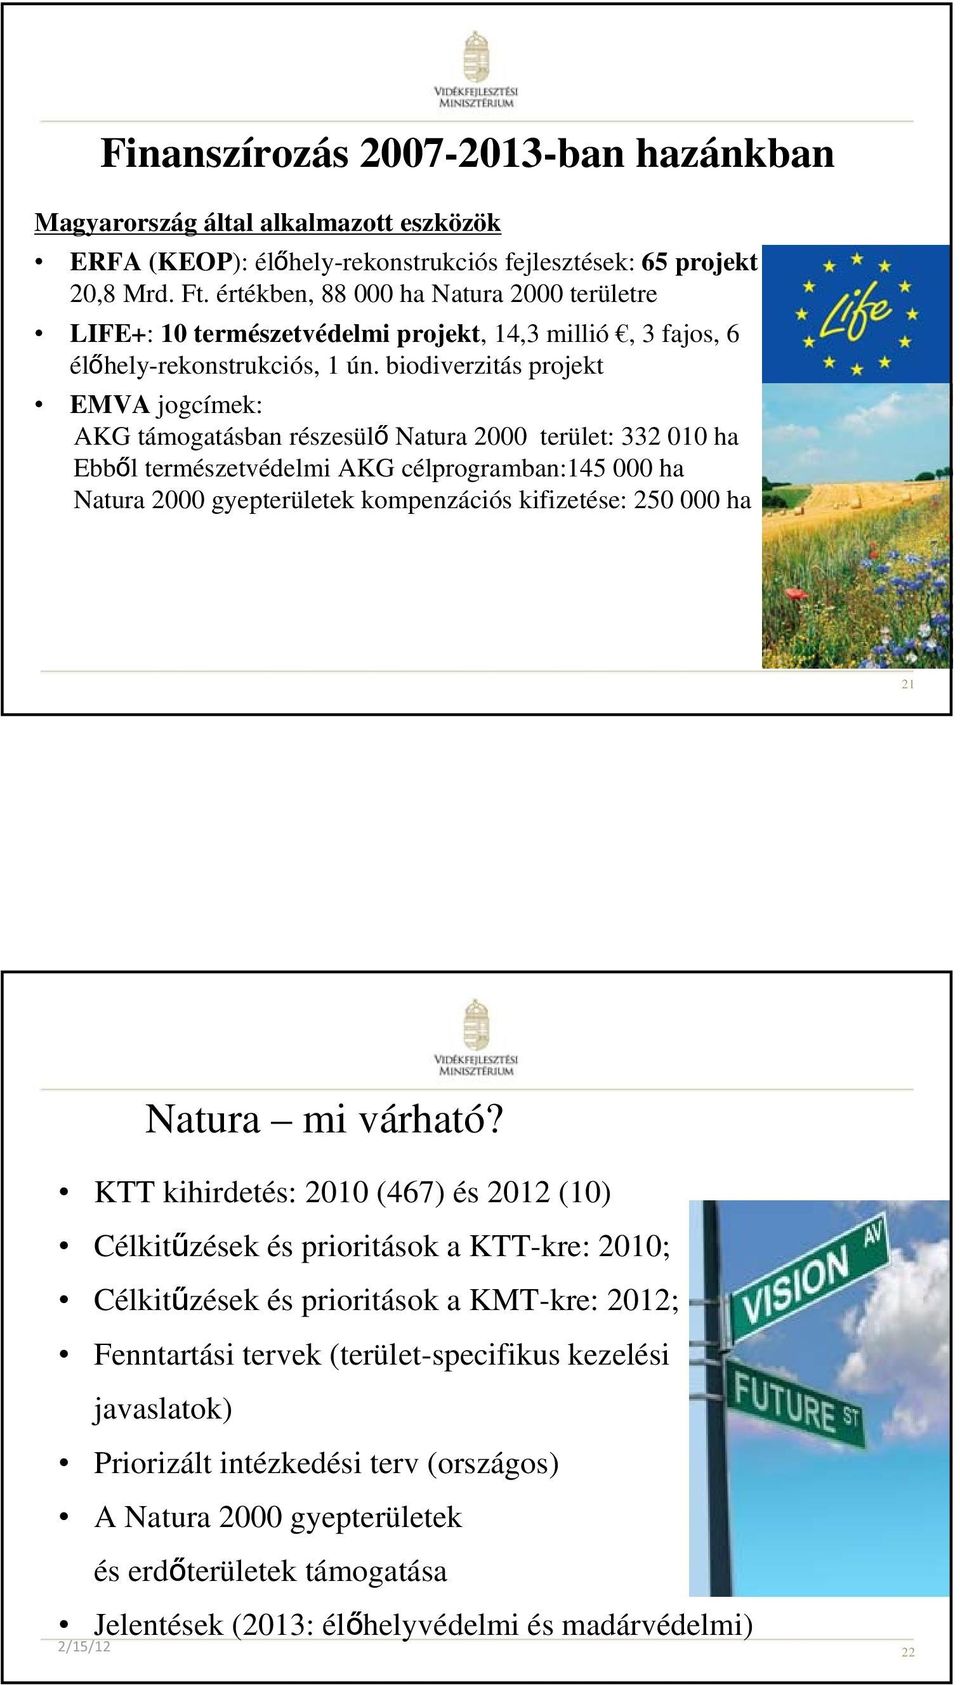 biodiverzitás projekt EMVA jogcímek: AKG támogatásban részesülő Natura 2000 terület: 332 010 ha Ebből természetvédelmi AKG célprogramban:145 000 ha Natura 2000 gyepterületek kompenzációs kifizetése: